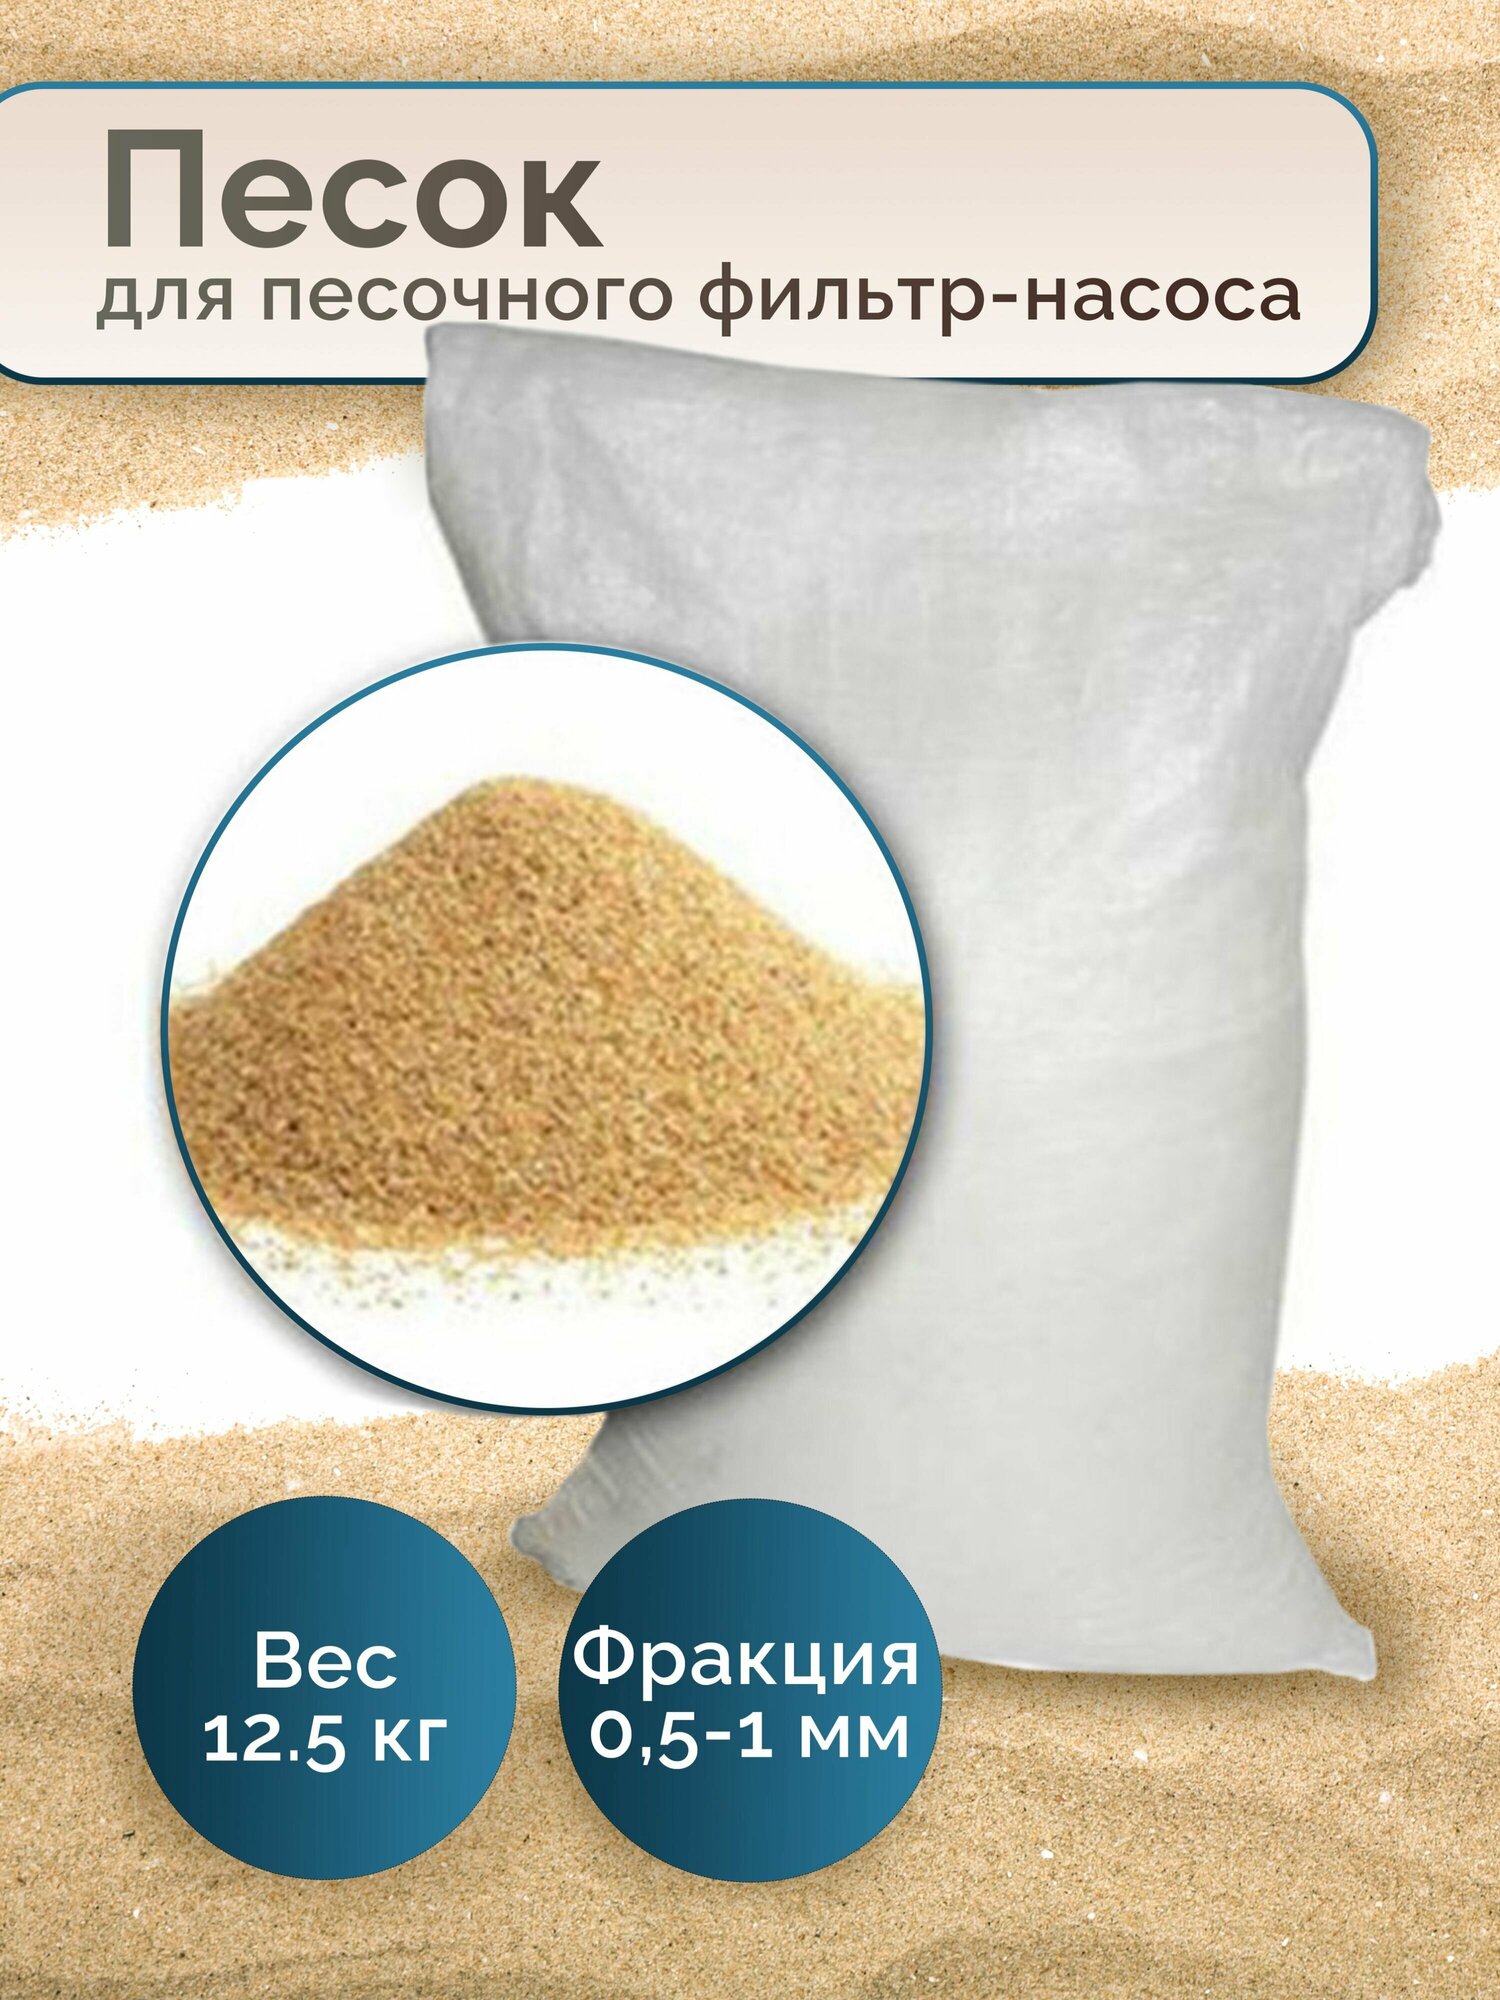 Песок кварцевый для песочного фильтр-насоса 12,5 кг, фракции 0,5-1 мм